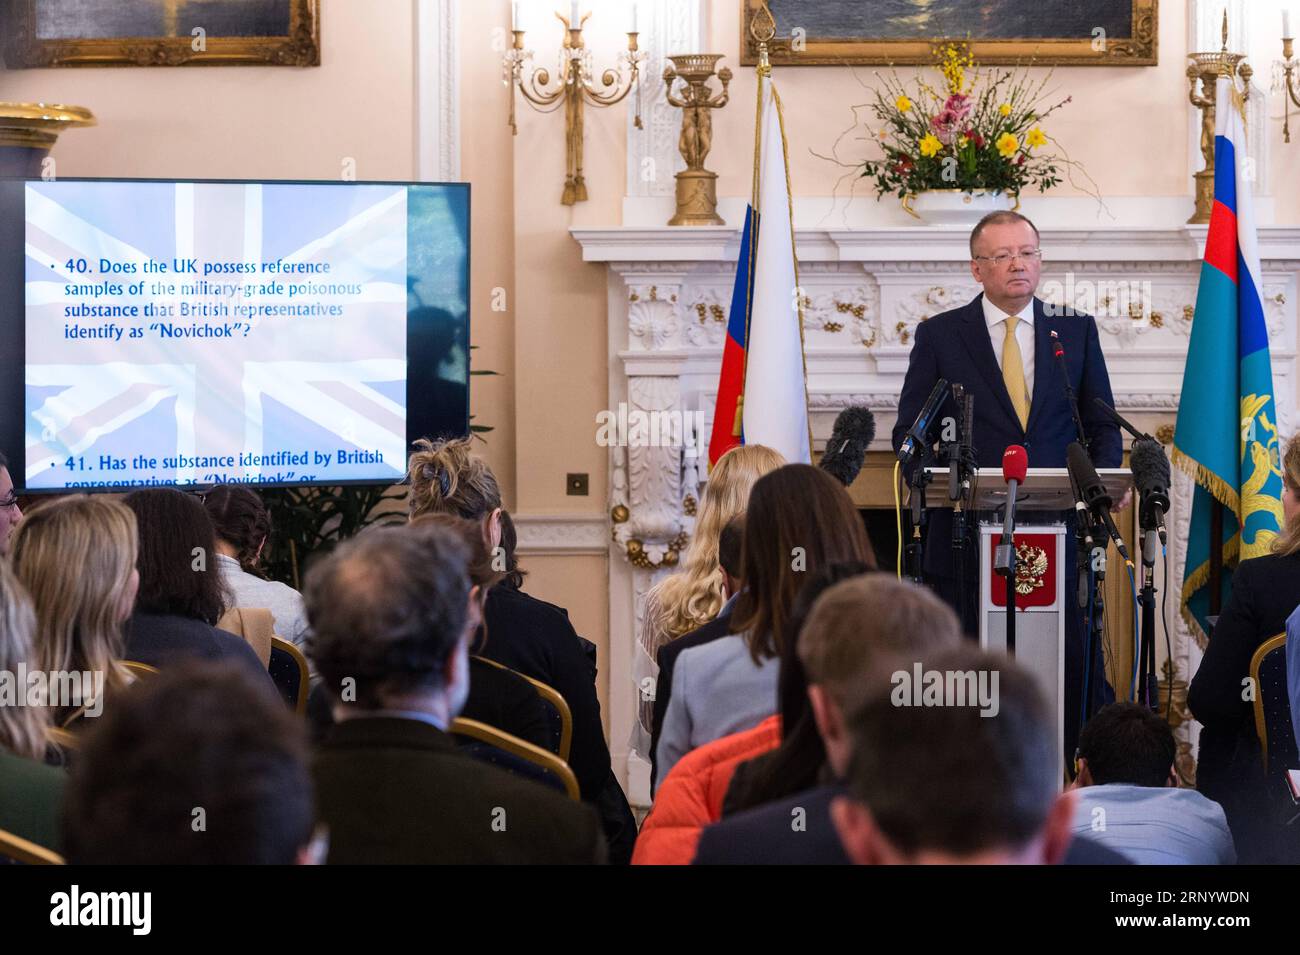 (180405) -- LONDRA, 5 aprile 2018 -- l'ambasciatore russo nel Regno Unito Alexander Yakovenko (Rear) partecipa a una conferenza stampa presso la residenza dell'ambasciatore russo a Londra, in Gran Bretagna, il 5 aprile 2018. L'ambasciatore russo nel Regno Unito Alexander Yakovenko giovedì ha affermato che la comunità internazionale non è disposta ad associarsi al Regno Unito e agli Stati Uniti per l'avvelenamento di Sergei Skripal dopo che la proposta della Russia di un'indagine congiunta sul caso è stata respinta in a riunione dell'Organizzazione per la proibizione delle armi chimiche (OPCW) mercoledì. ) BRITAIN-LONDON-RUSSIAN AMBASSA Foto Stock